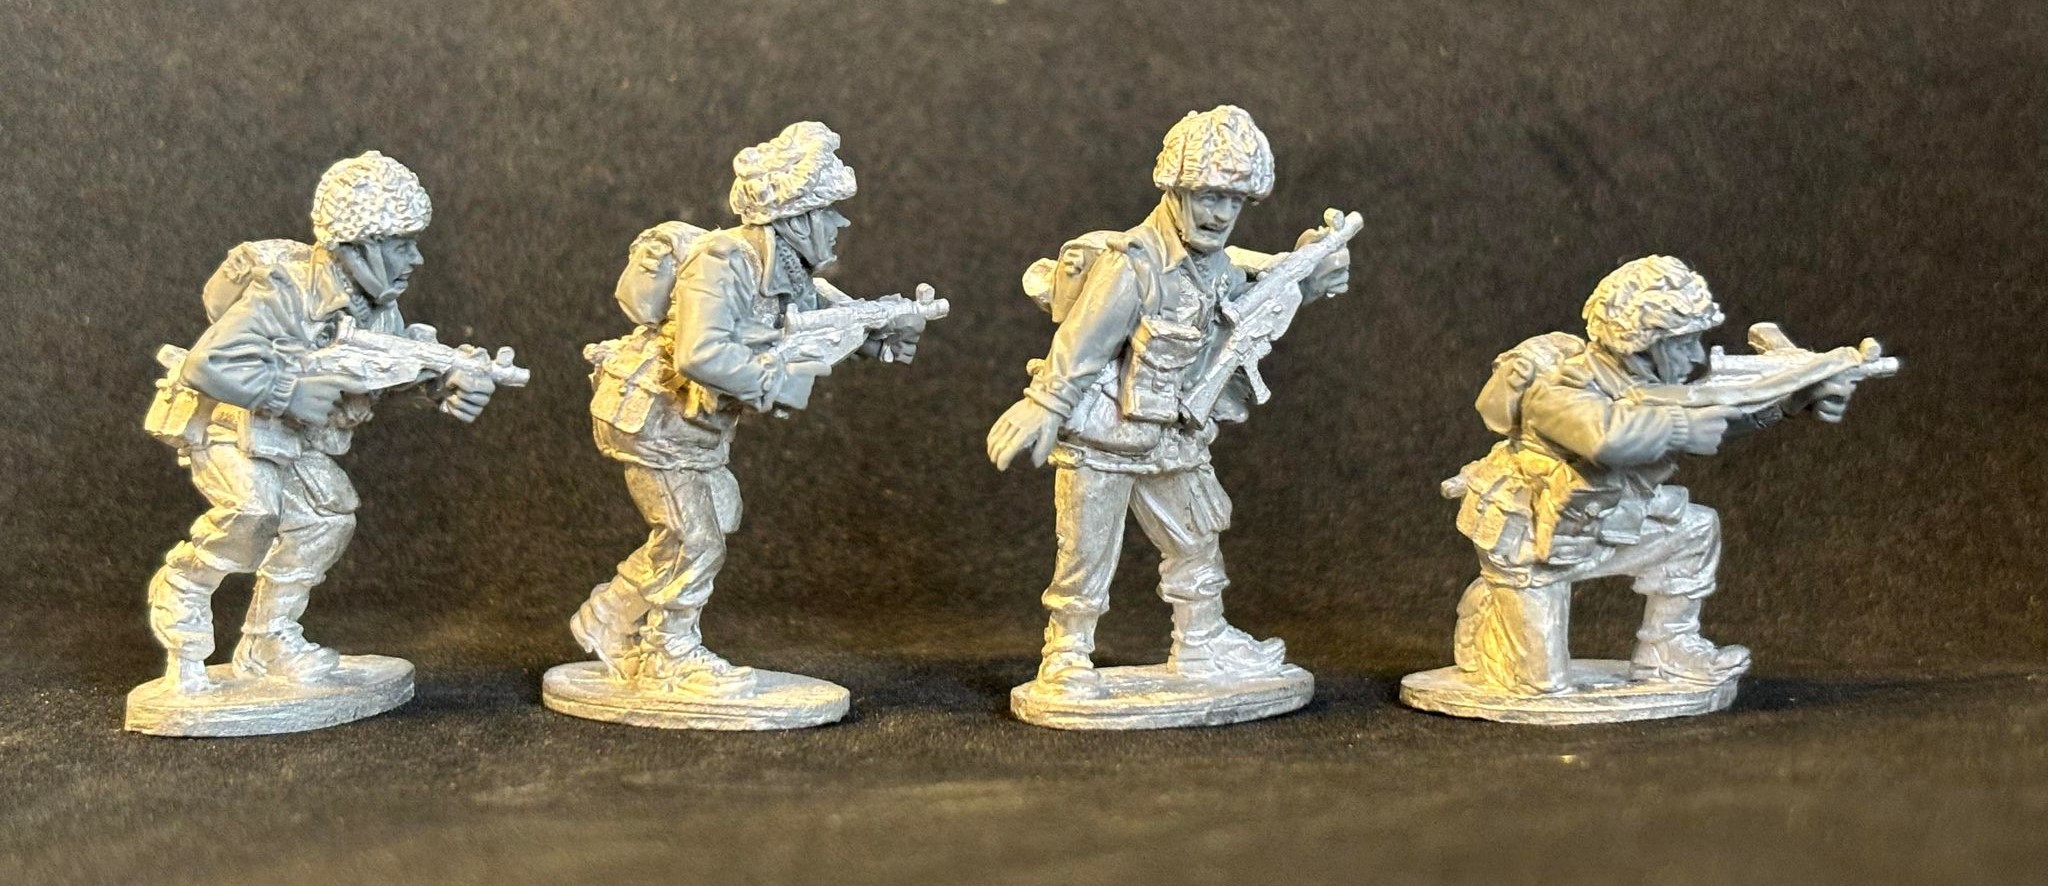 Arnhem Heroes 2 Kickstarter Preview #1 - Empress Miniatures